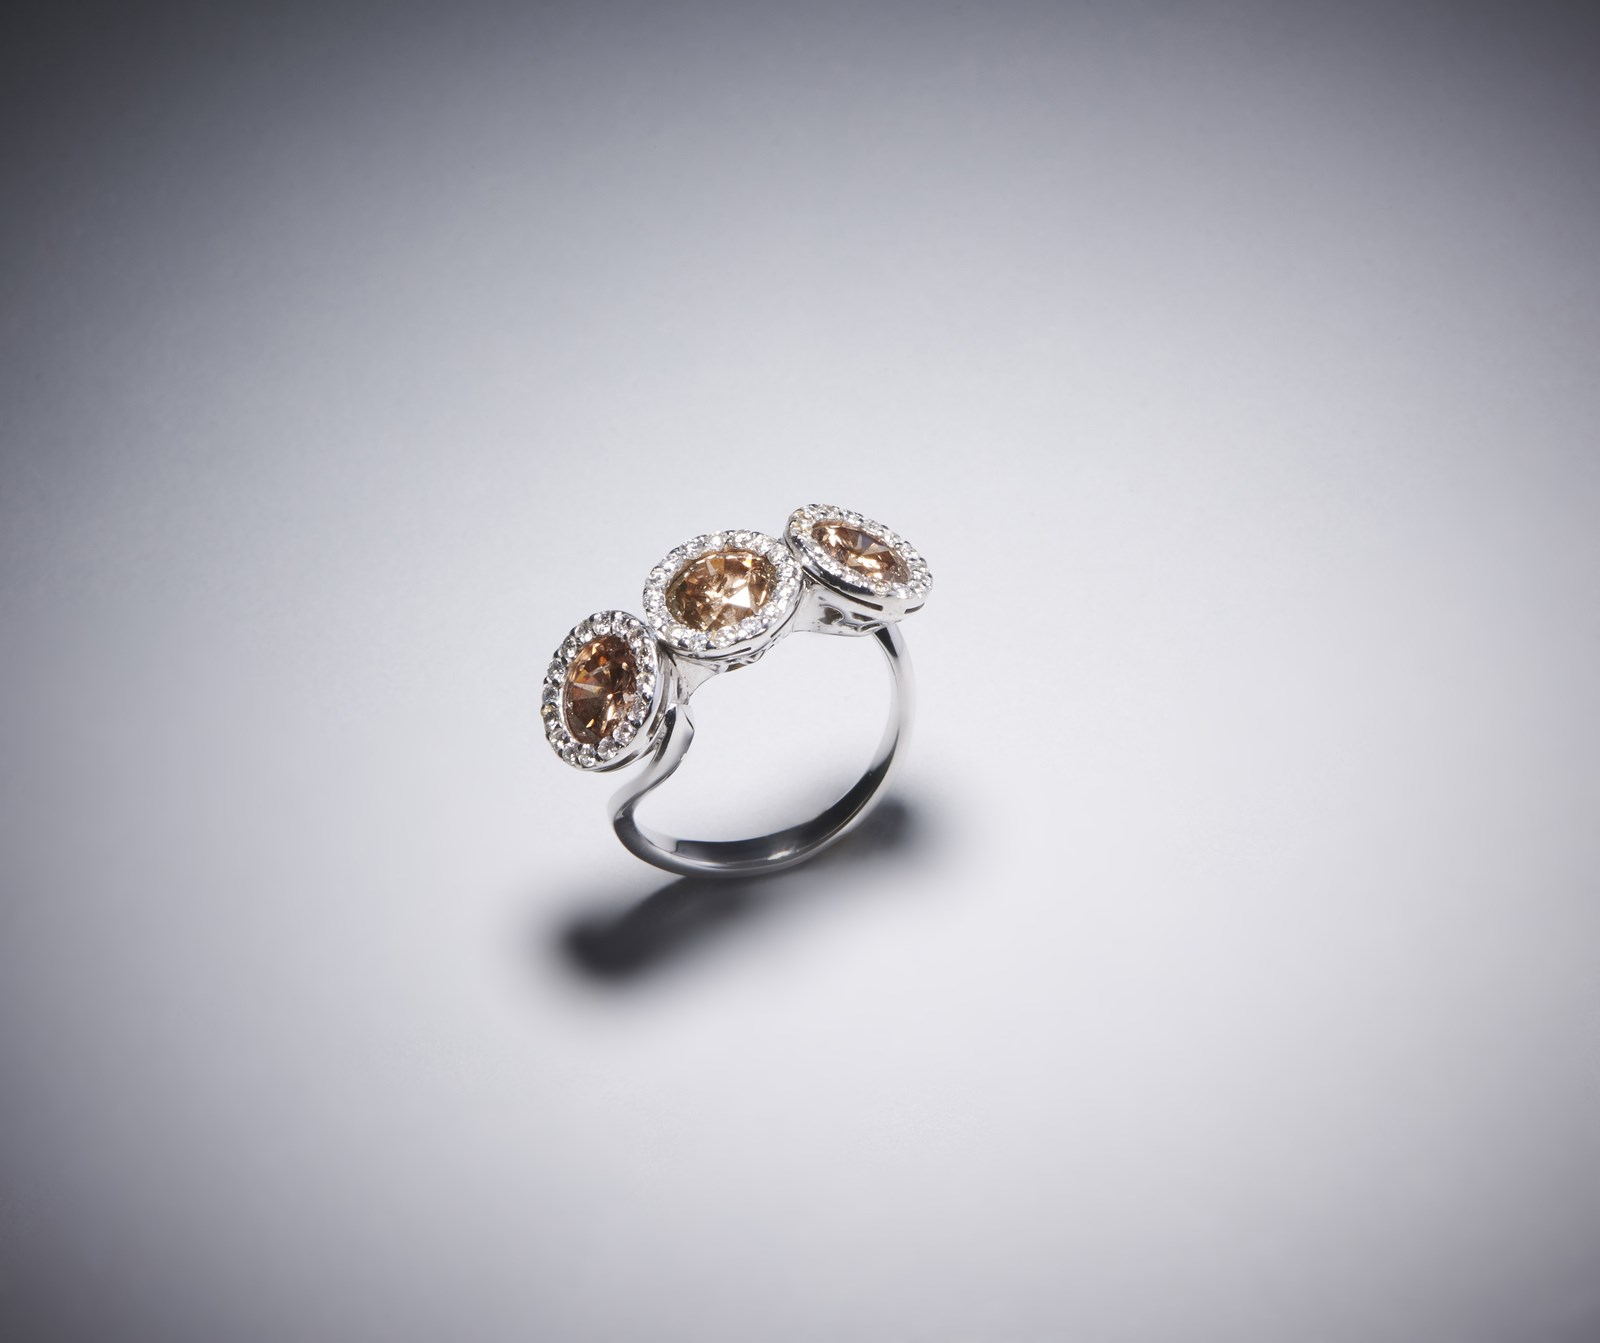 Anello in oro bianco 750/1000 con tre diamanti brown taglio a brillante per 4,00 ct. totali circa e pavè di diamanti bianchi  taglio misto di circa 1,30 ct. (. )